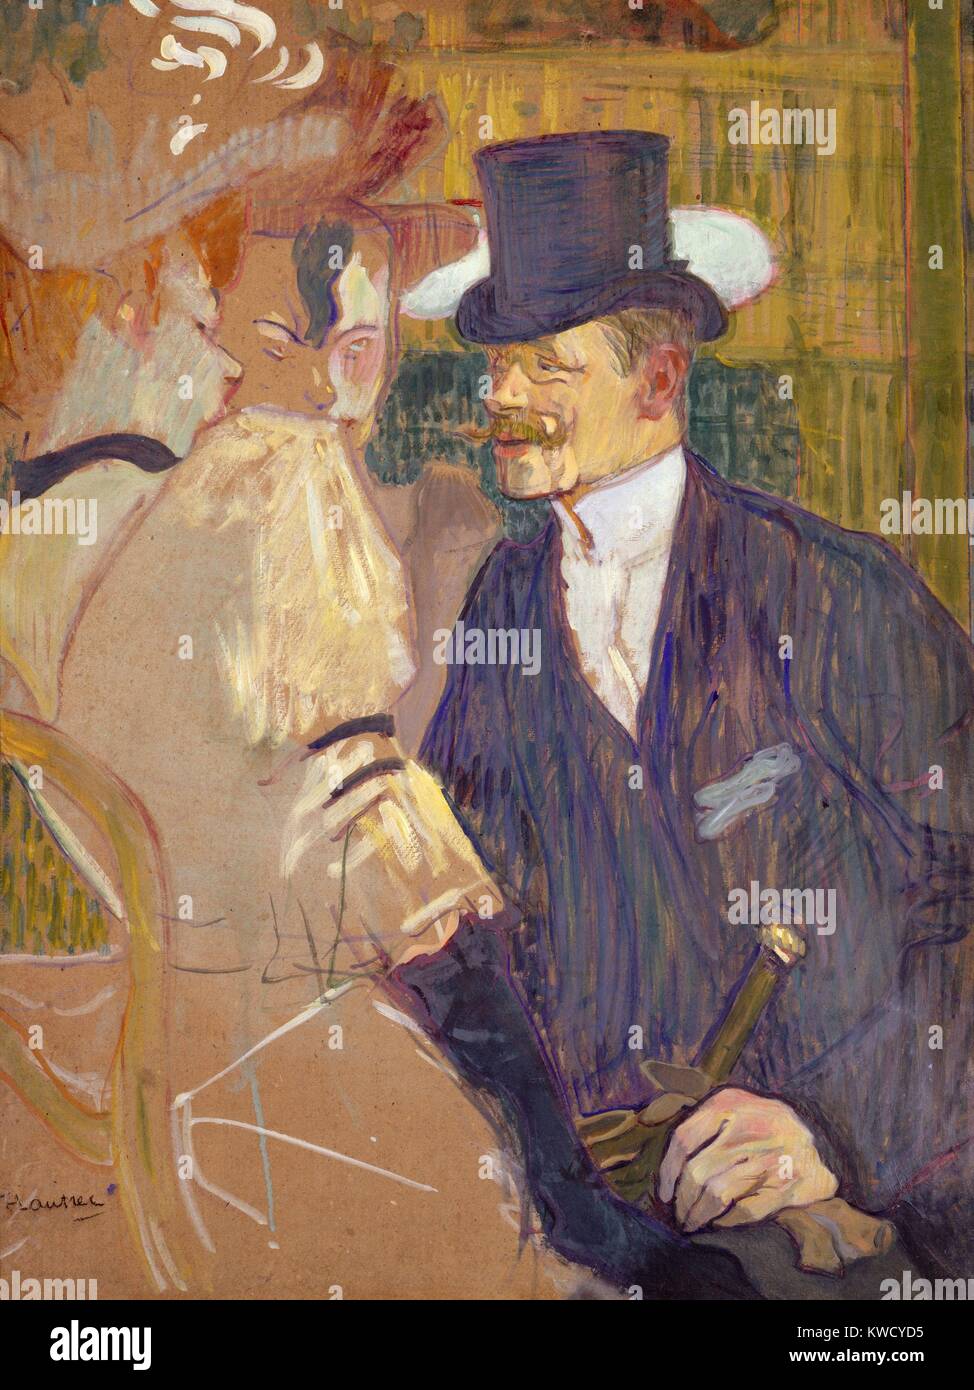 L' anglais au Moulin Rouge, par Henri de Toulouse-Lautrec, 1892, peinture postimpressionniste. Lautrecs ami, peintre anglais William Tom Warrener, apparaît comme une casquette monsieur avec deux des compagnes au Moulin Rouge. Warrener (BSLOC la redde 2017 5 62) Banque D'Images